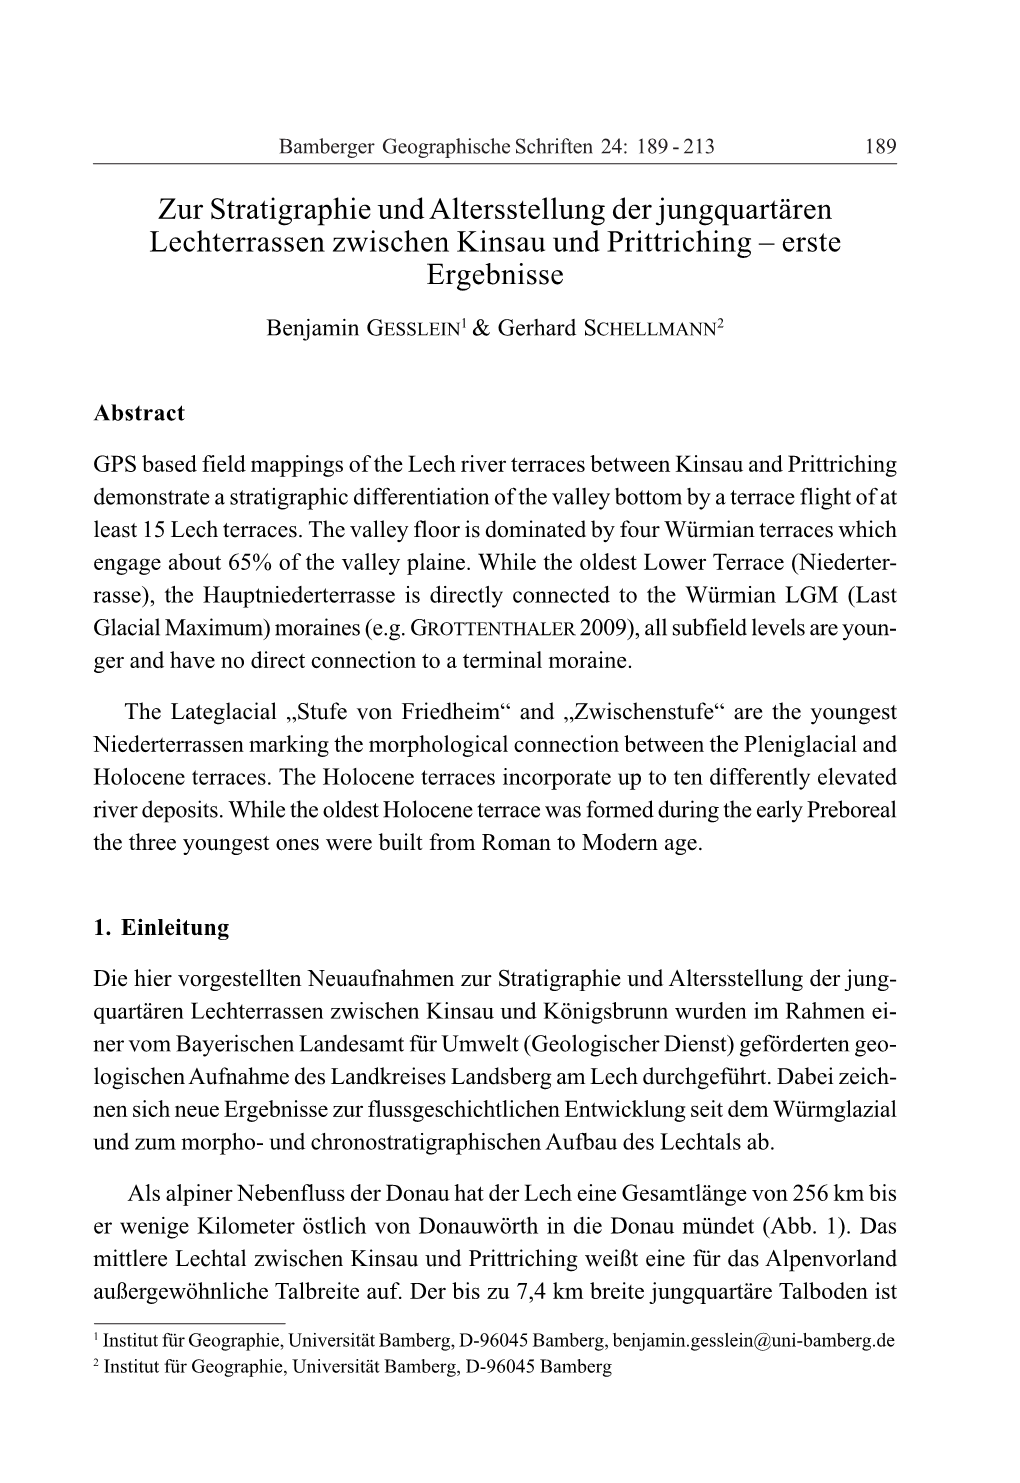 Zur Stratigraphie Und Altersstellung Der Jungquartären Lechterrassen Zwischen Kinsau Und Prittriching – Erste Ergebnisse